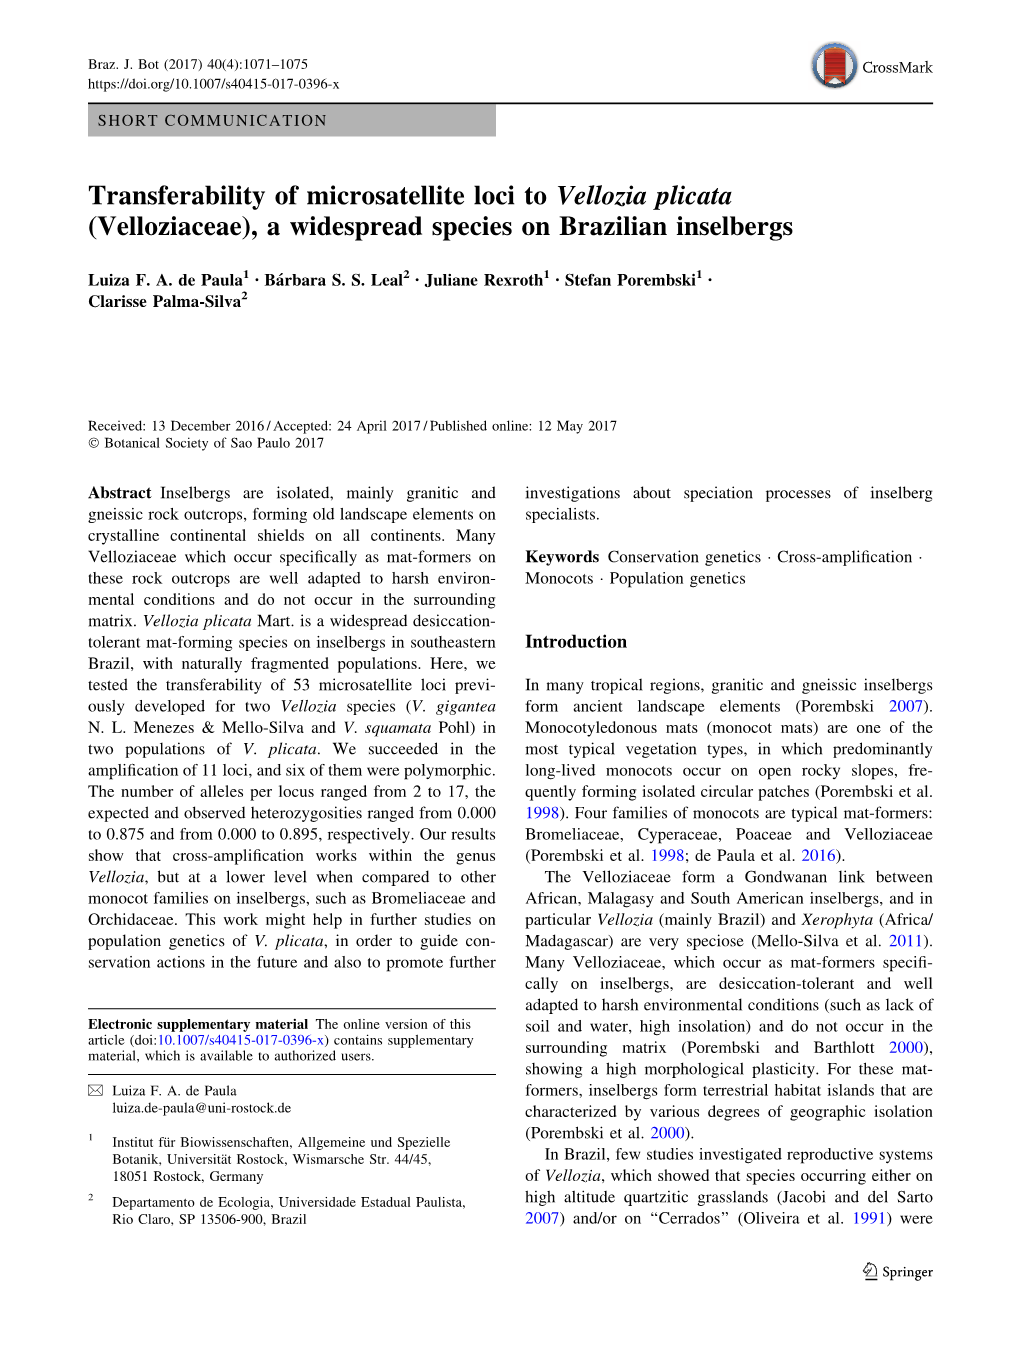 Transferability of Microsatellite Loci to Vellozia Plicata (Velloziaceae), a Widespread Species on Brazilian Inselbergs